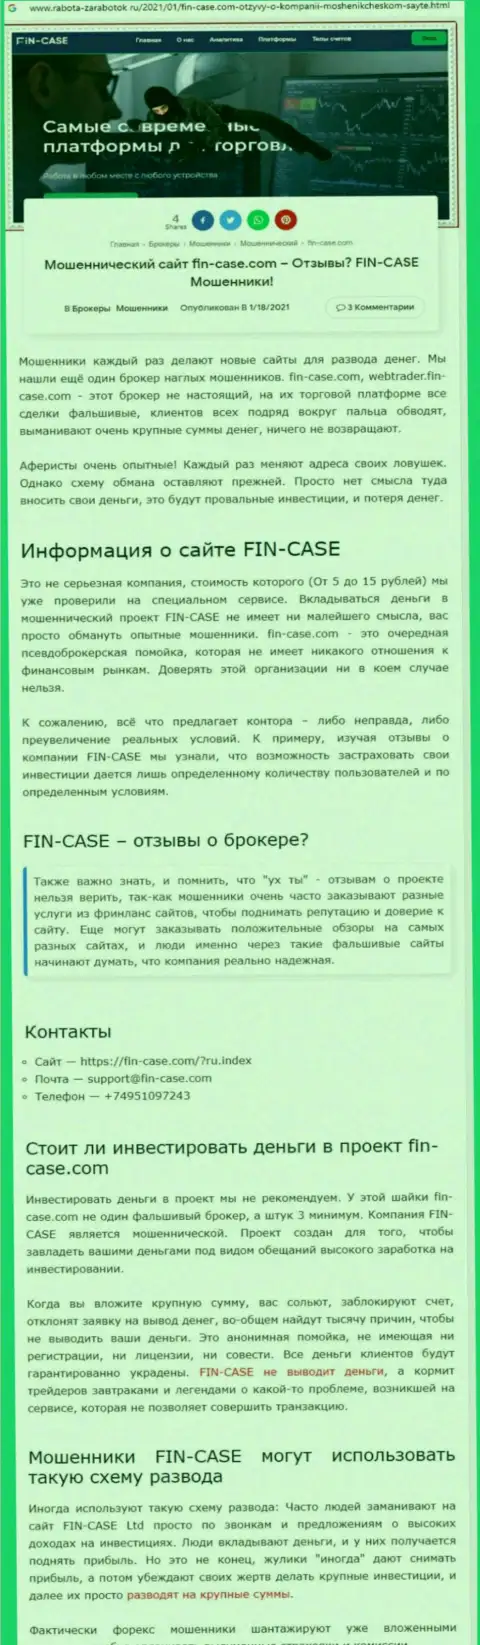 Fin Case - это компания, зарабатывающая на отжатии вложенных денег своих клиентов (обзор противозаконных деяний)